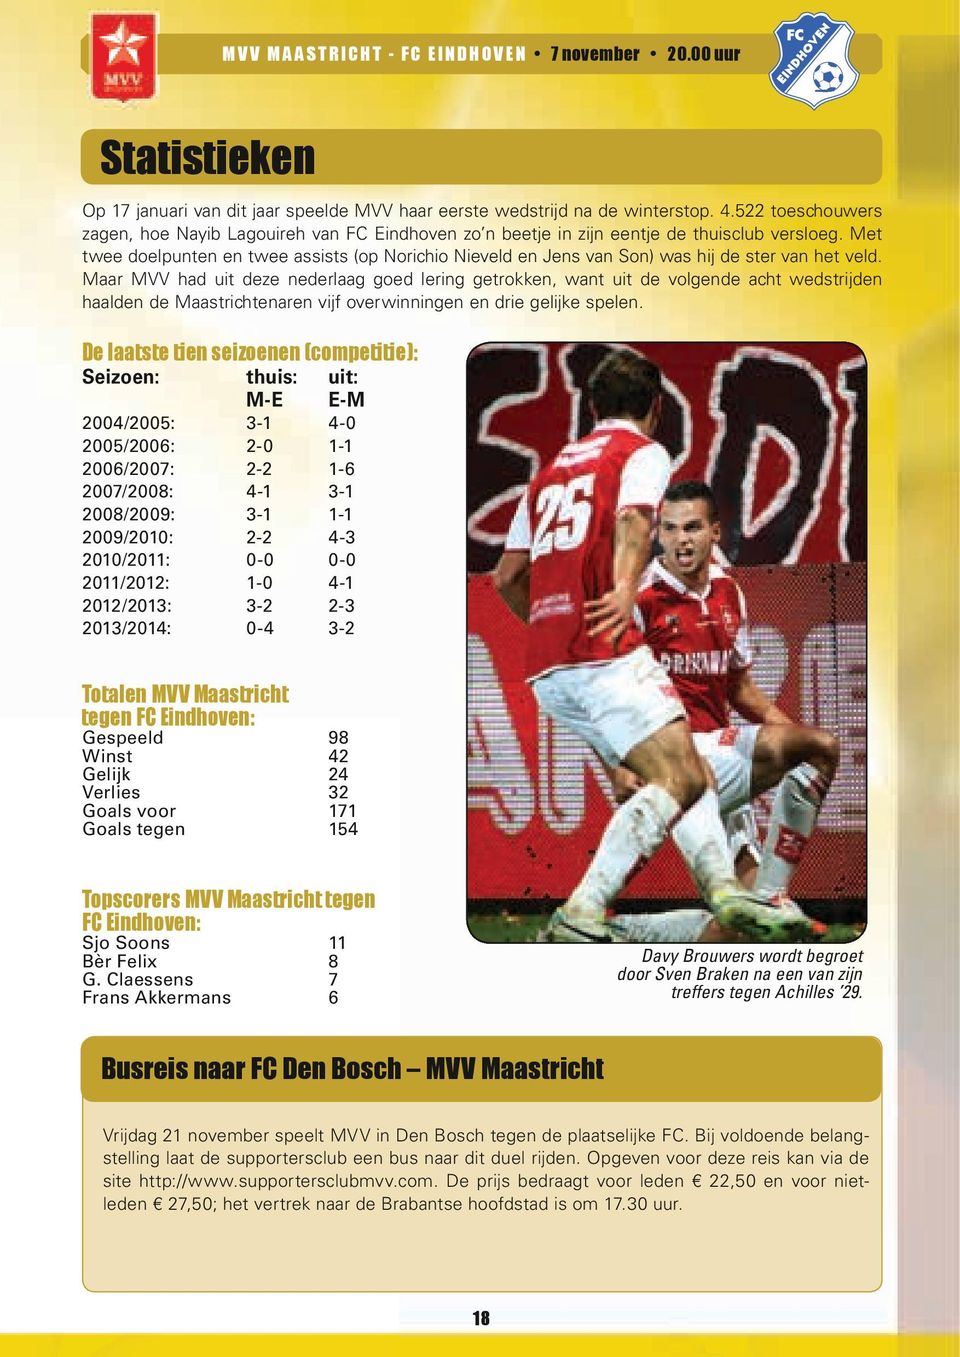 Met twee doelpunten en twee assists (op Norichio Nieveld en Jens van Son) was hij de ster van het veld.